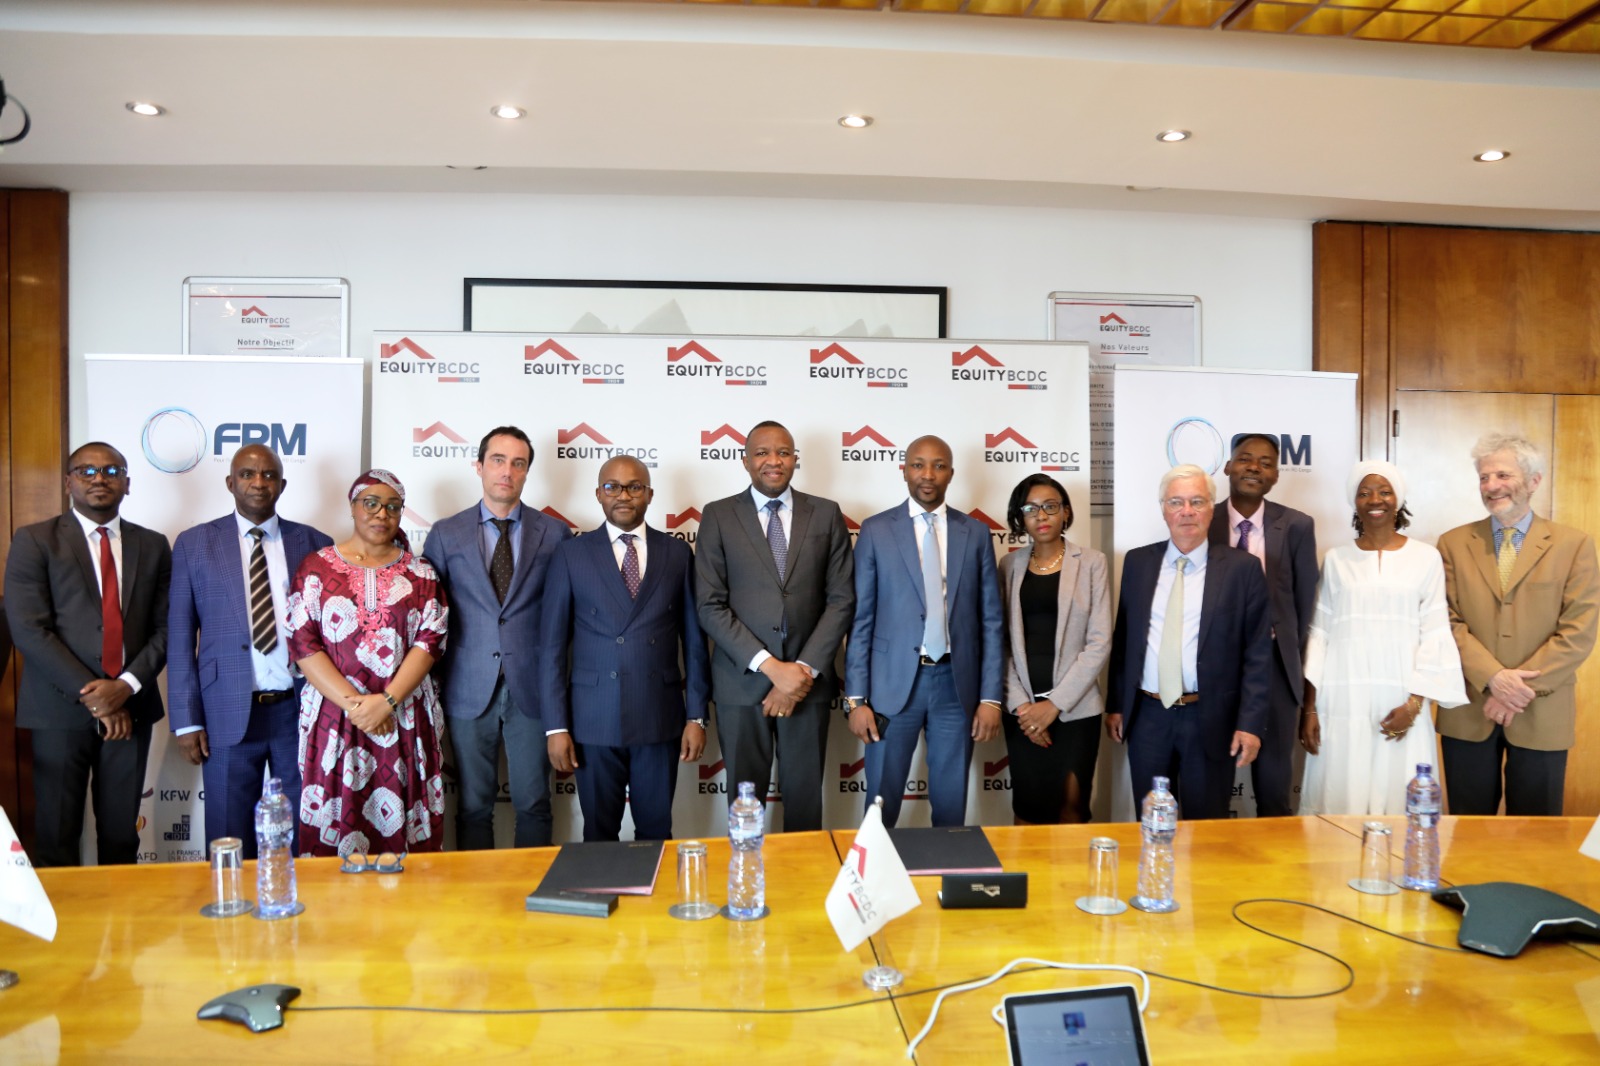 Signature d’un partenariat financier entre FPM SA et EquityBCDC pour soutenir l’inclusion financière en RDC